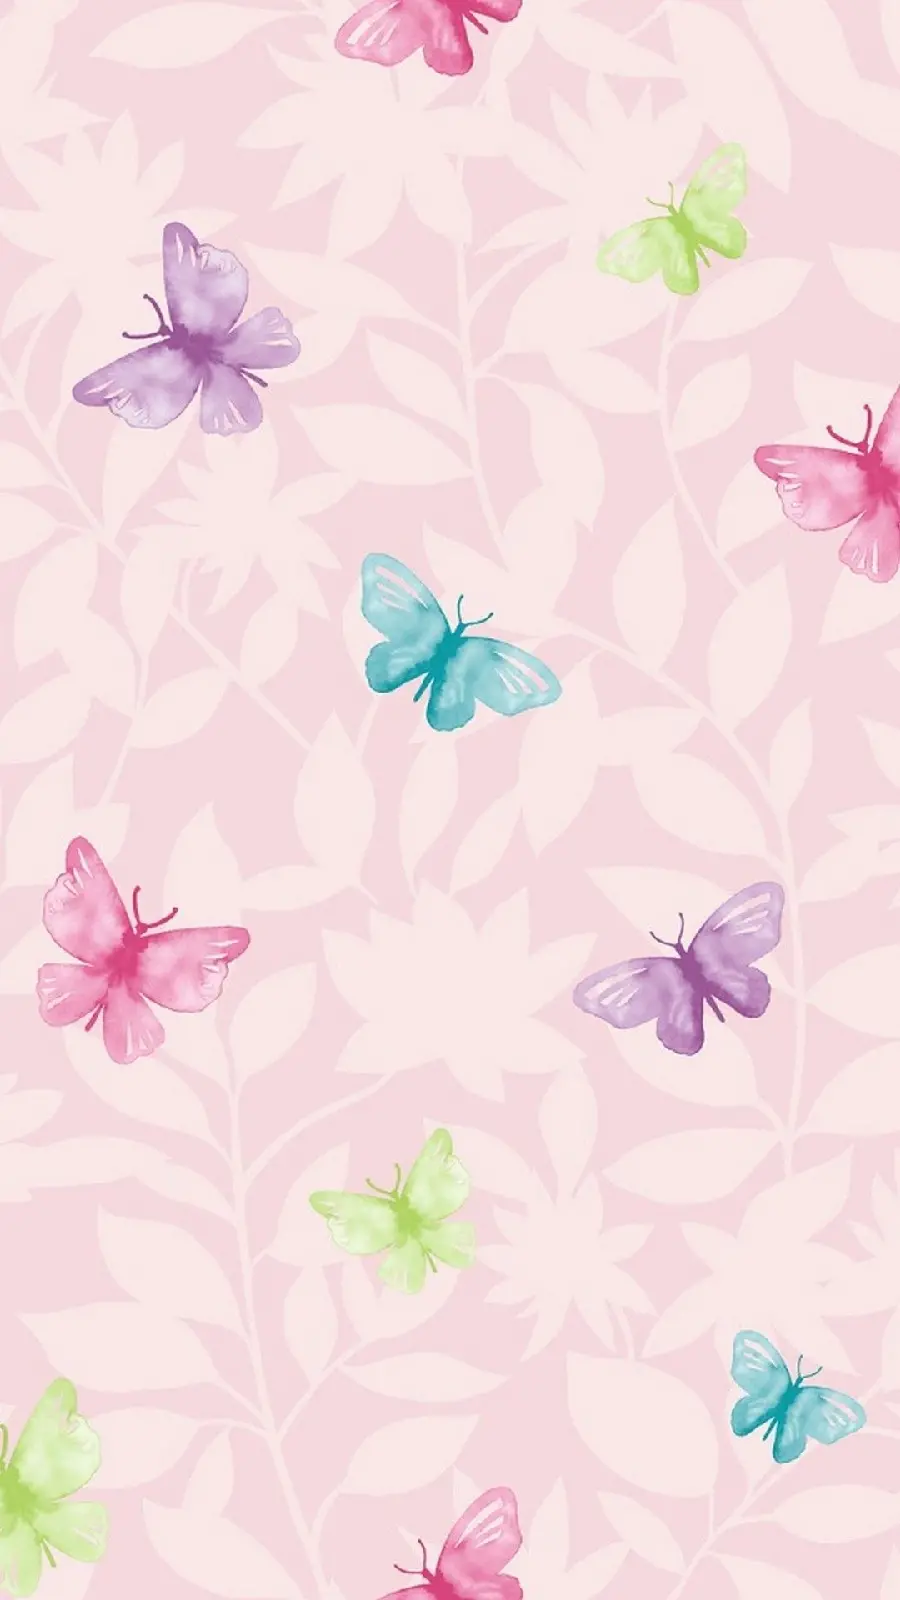 عکس استوک با زمینه صورتی و طرح پروانه های رنگی ناز برای آیفون